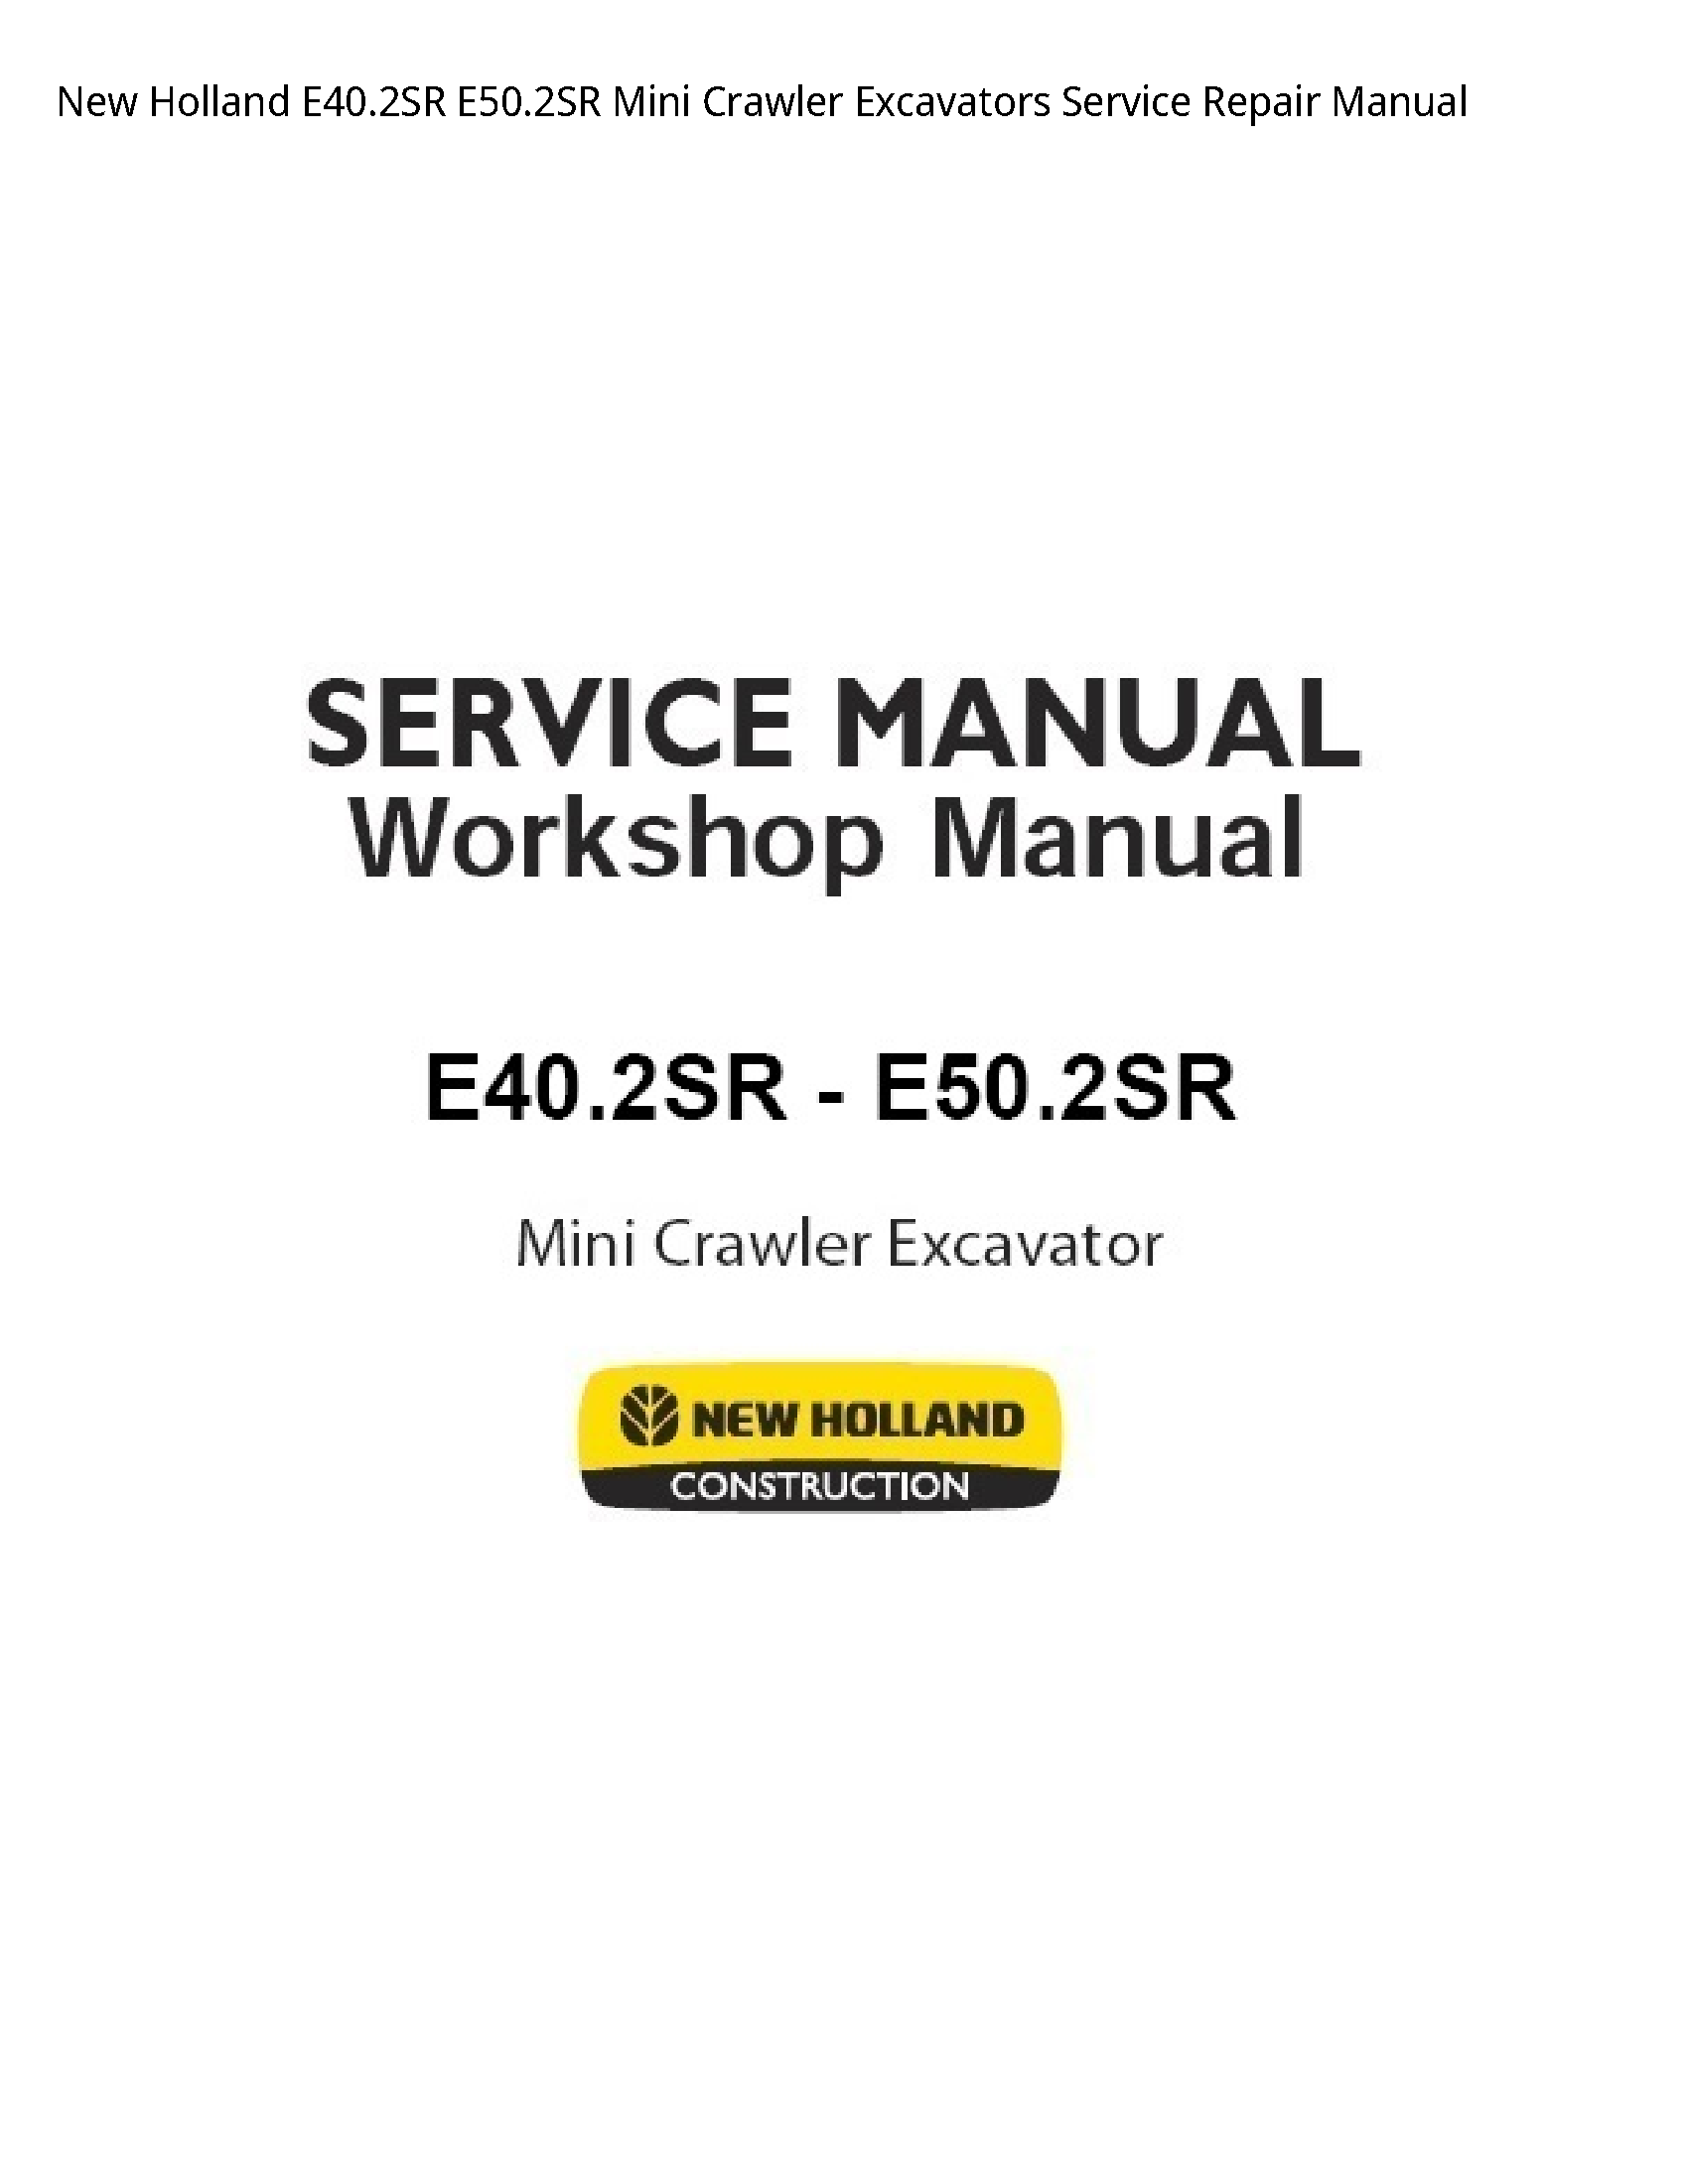 New Holland E40.2SR Mini Crawler Excavators manual